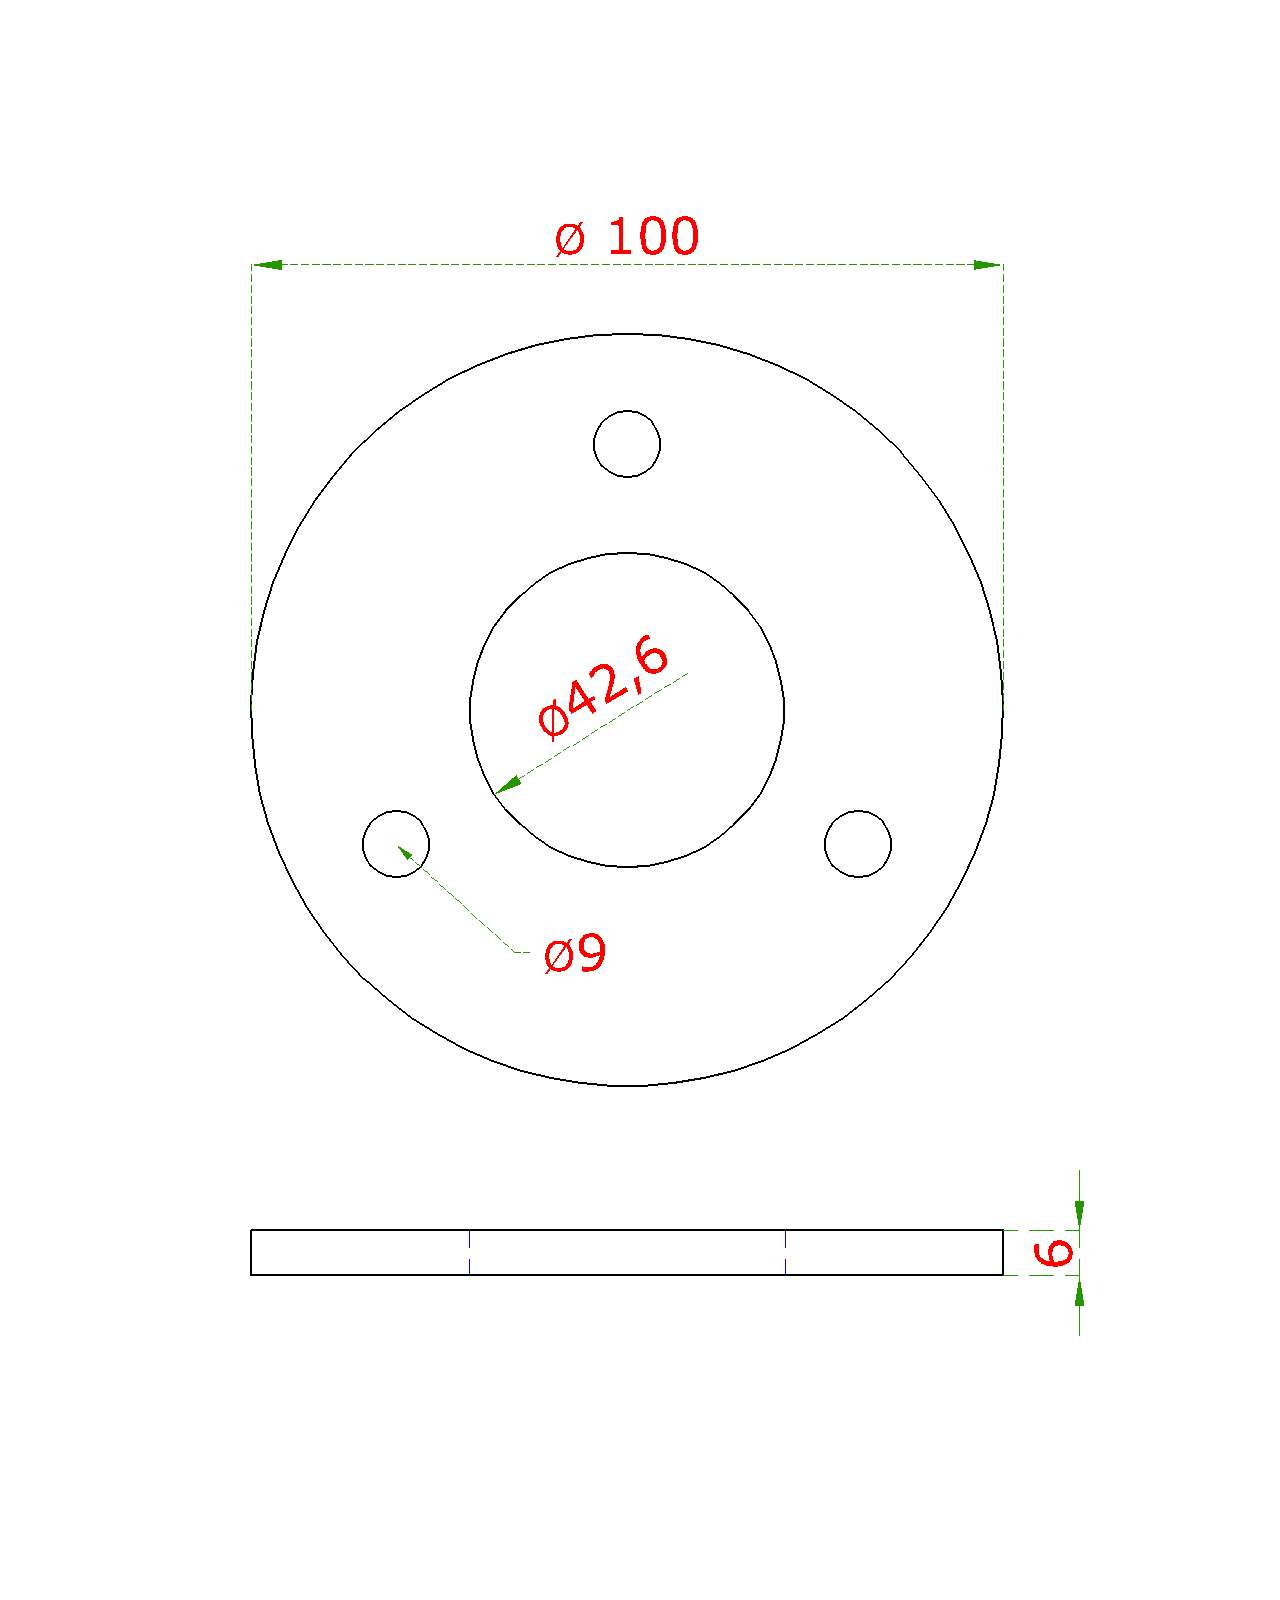 Kotevní plotna (ø 100x6 mm) na trubku ø 42,4 mm (otvor ø 42,6 mm), nerez broušená K320 / AISI304